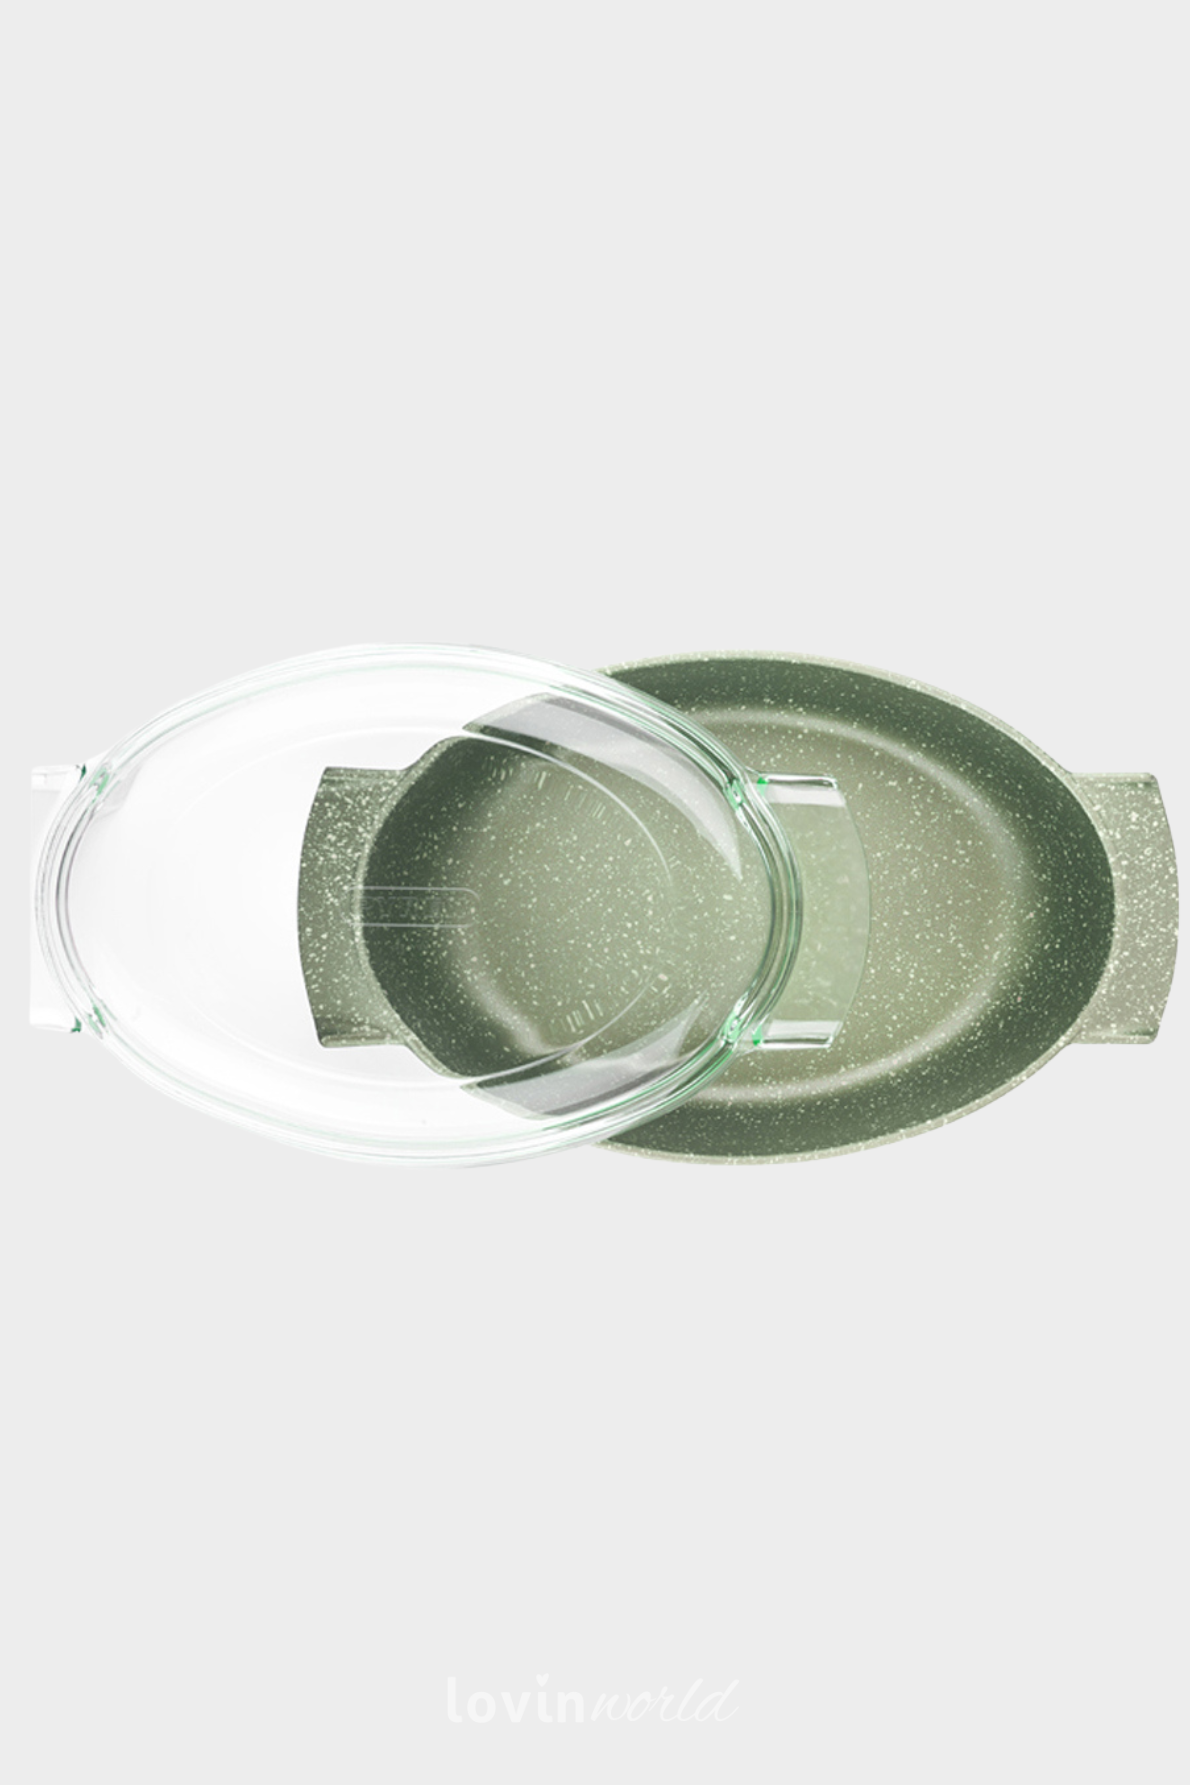 Rostiera ovale Dr. Green con coperchio, in alluminio antiaderente 36x24 cm.-2